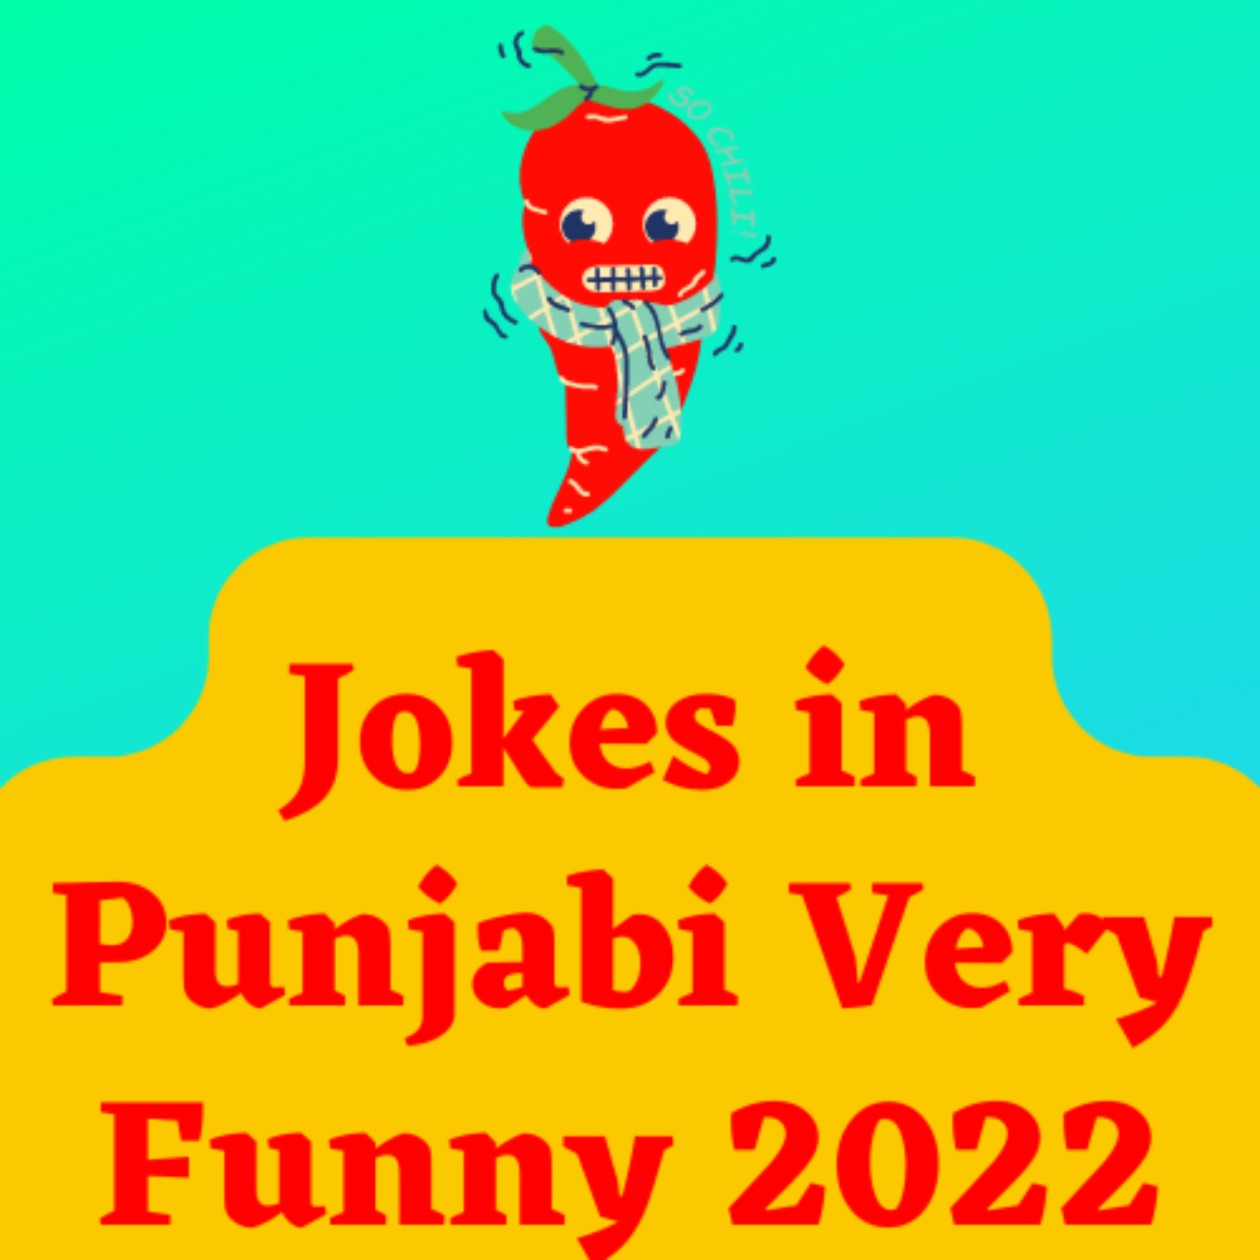 Jokes in Punjabi Very Funny 2022